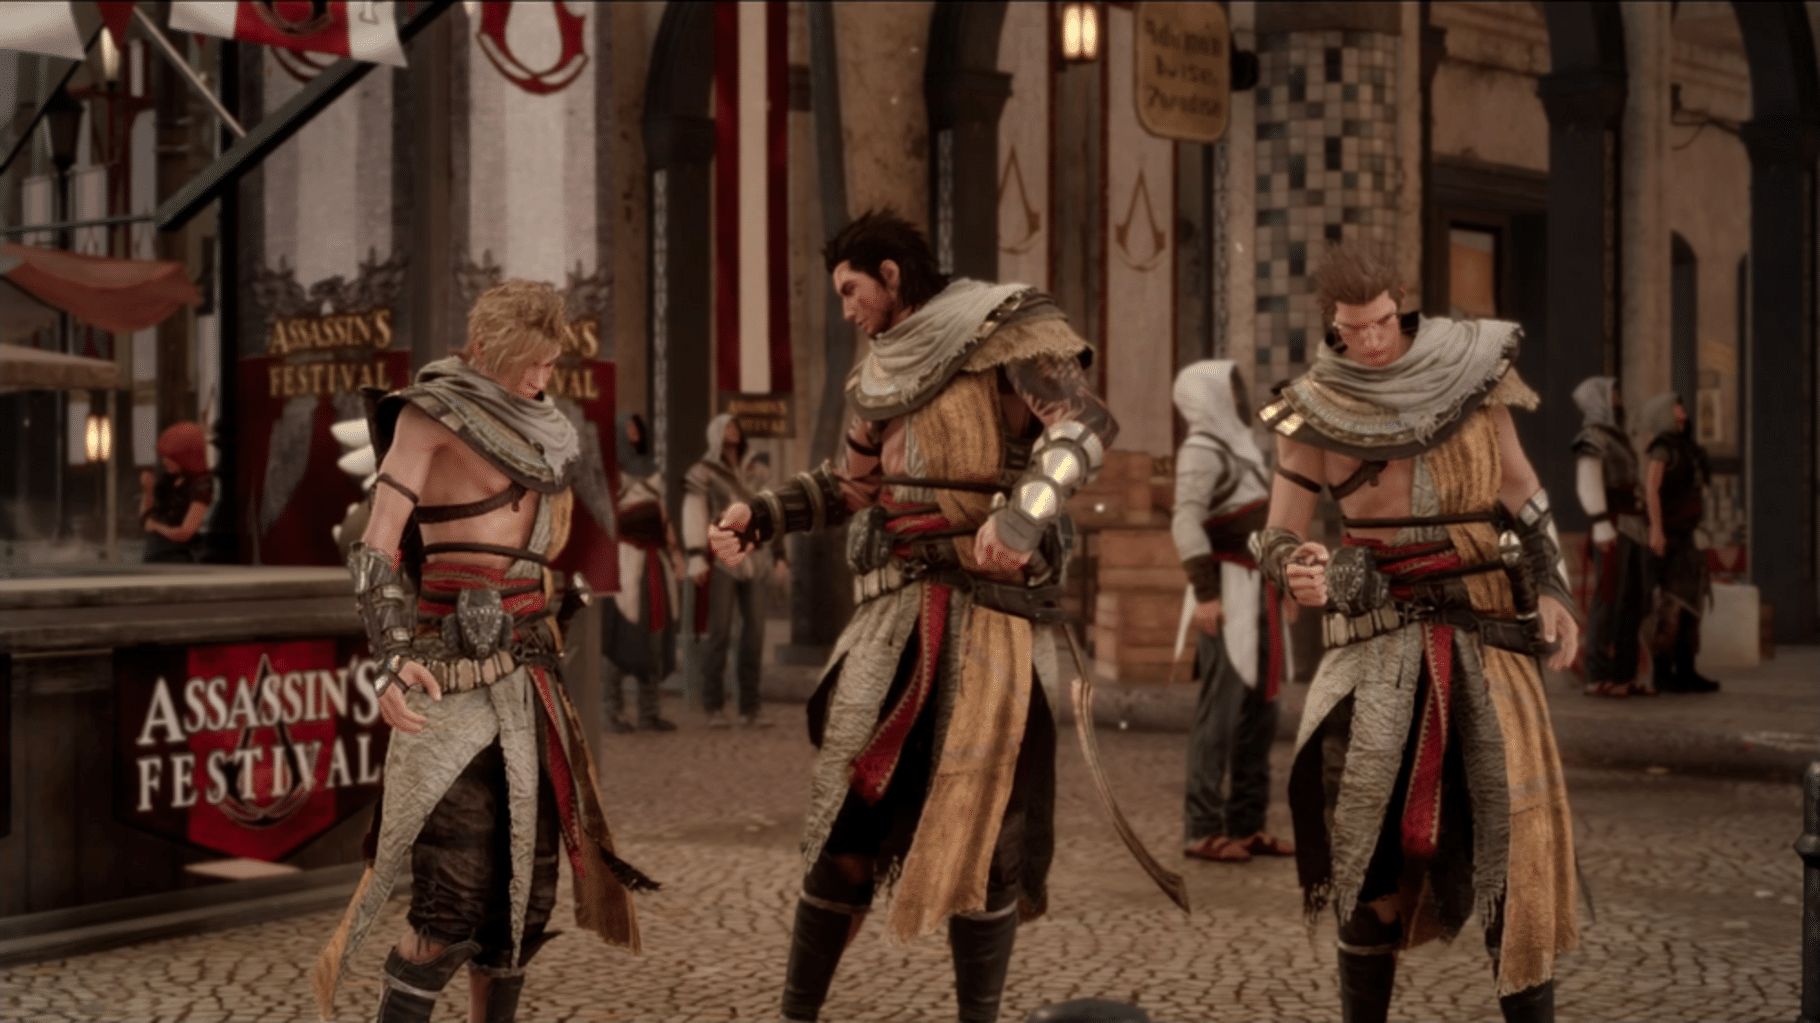 Final Fantasy XV: Assassin's Festival screenshot